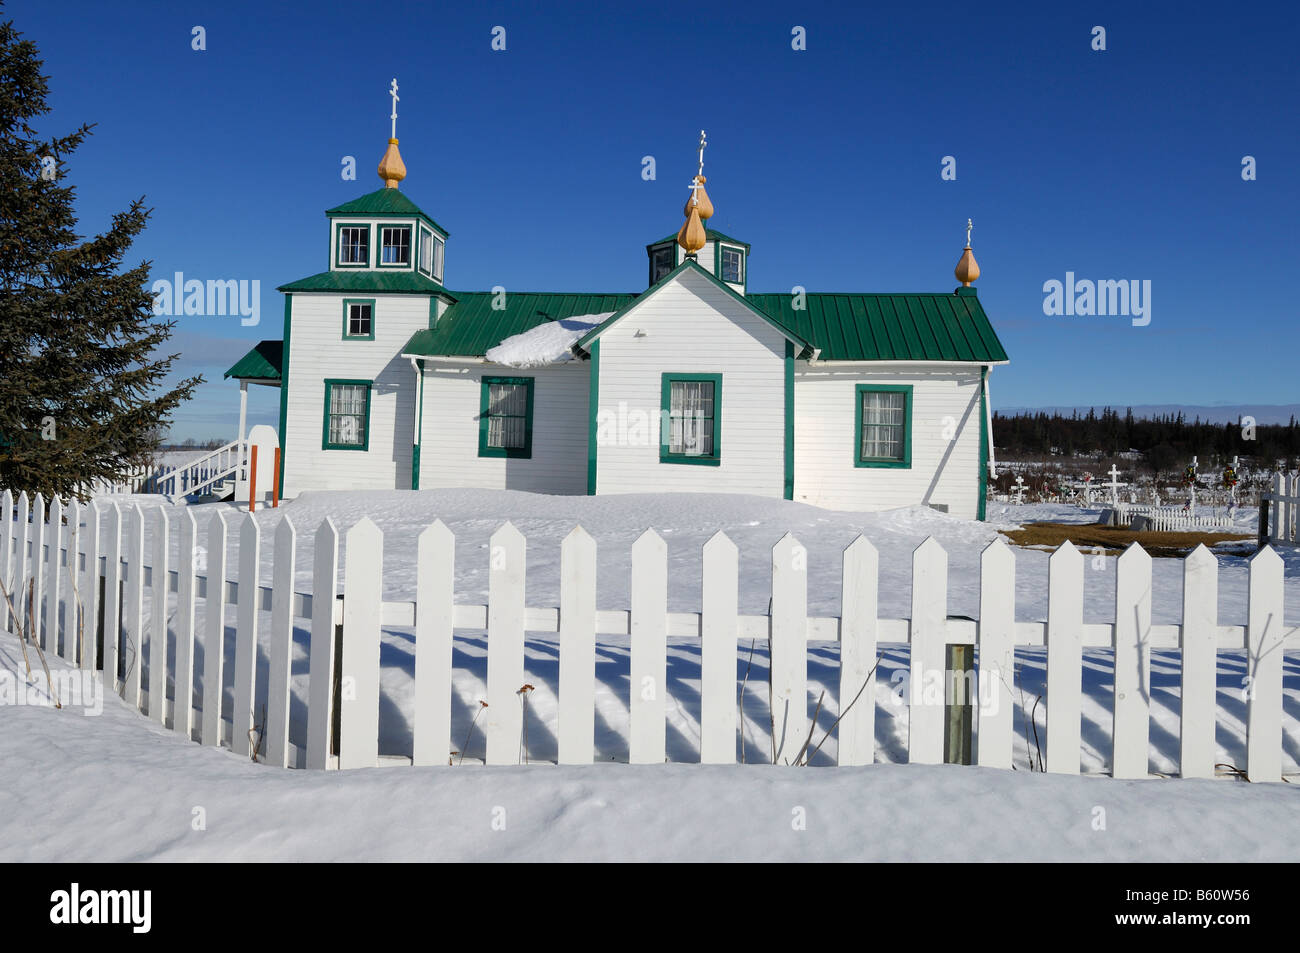 L'église orthodoxe russe, dans le cimetière avec de Ninilchik, péninsule de Kenai, Alaska, USA, Amérique du Nord Banque D'Images